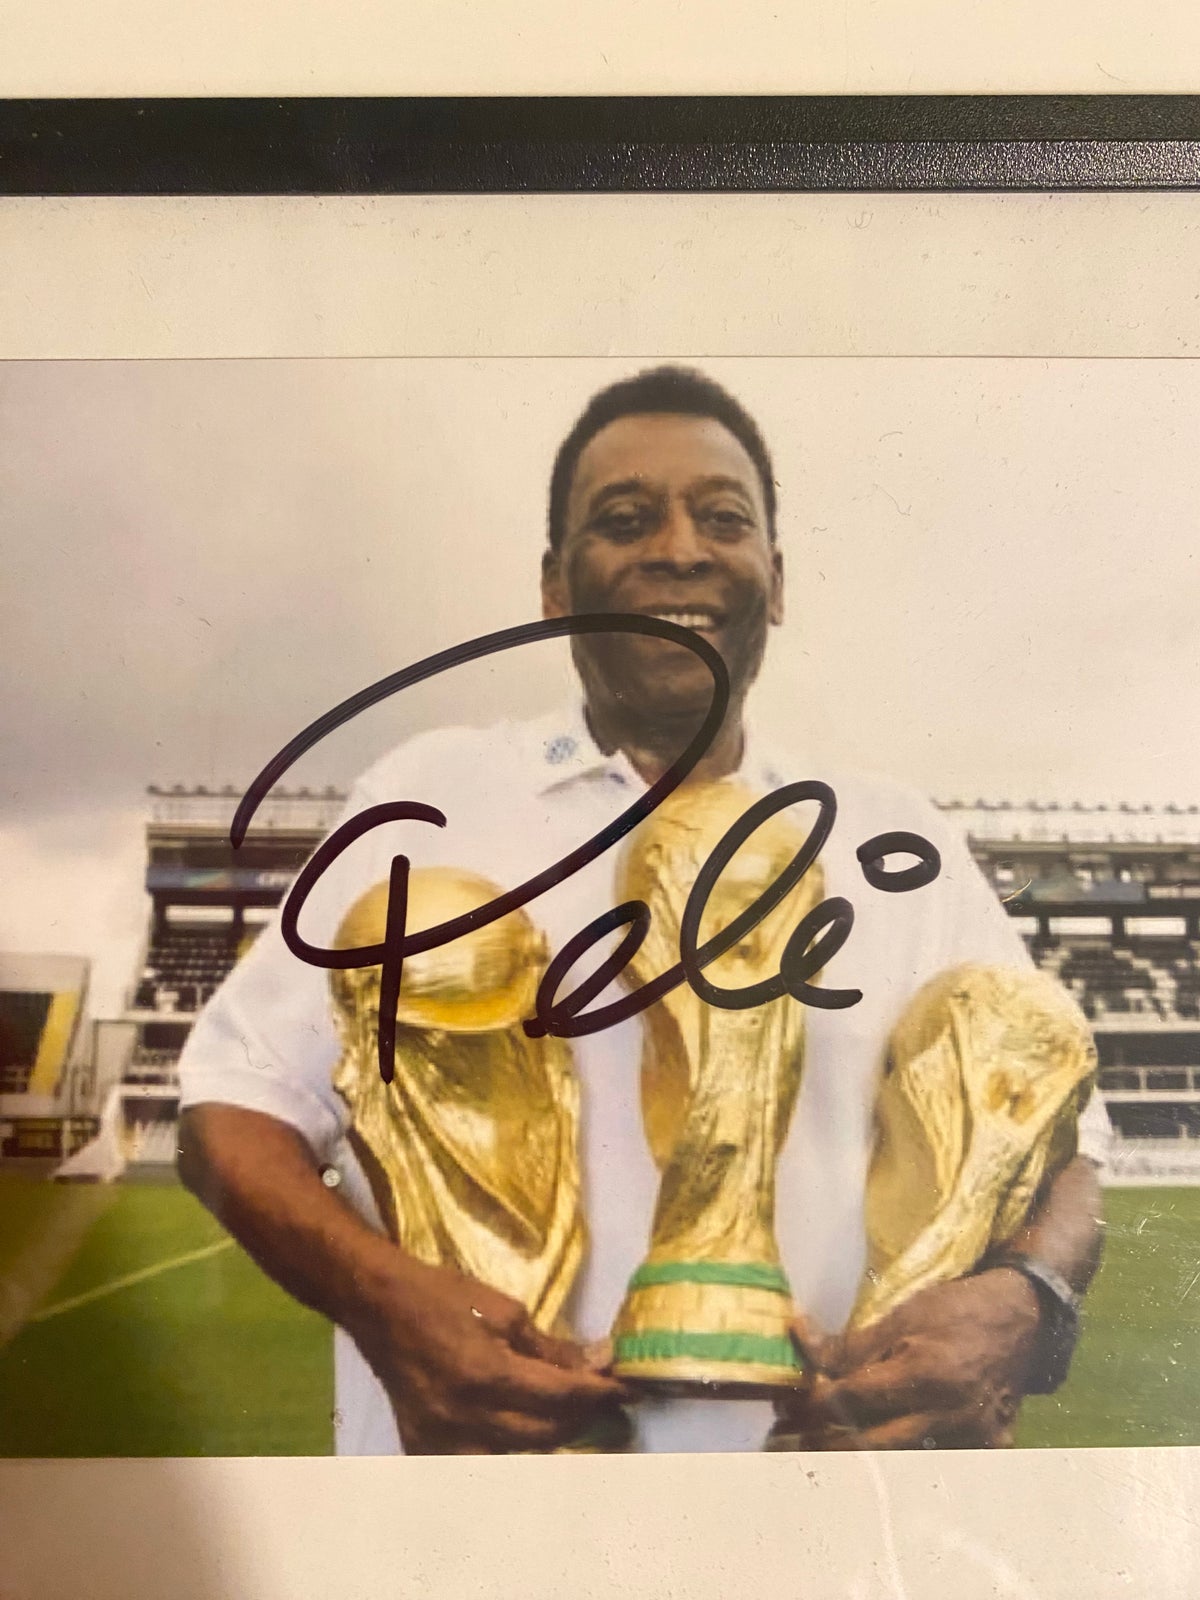 Fodboldtrøje, Autografer af Lionel Messi, Pelé og Henry